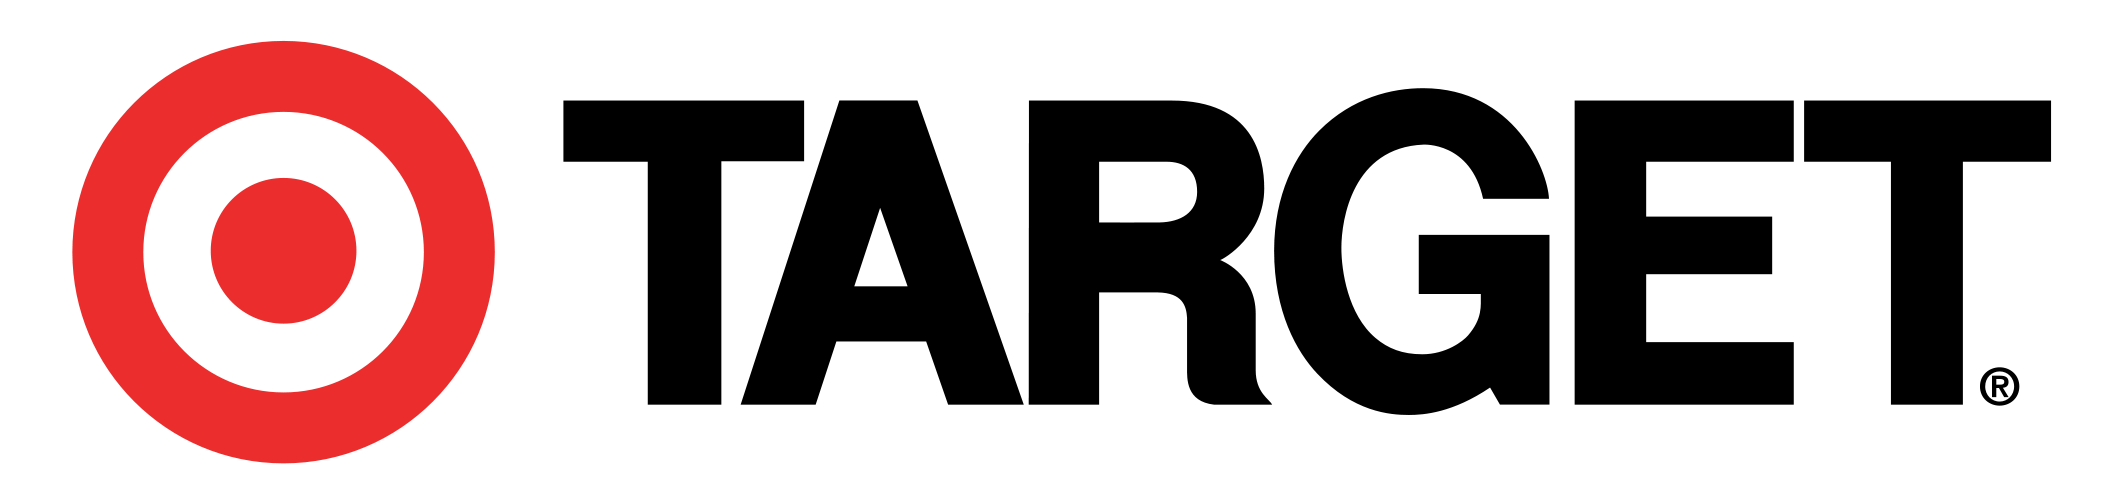 Target Logo PNG Transparent - PngPix